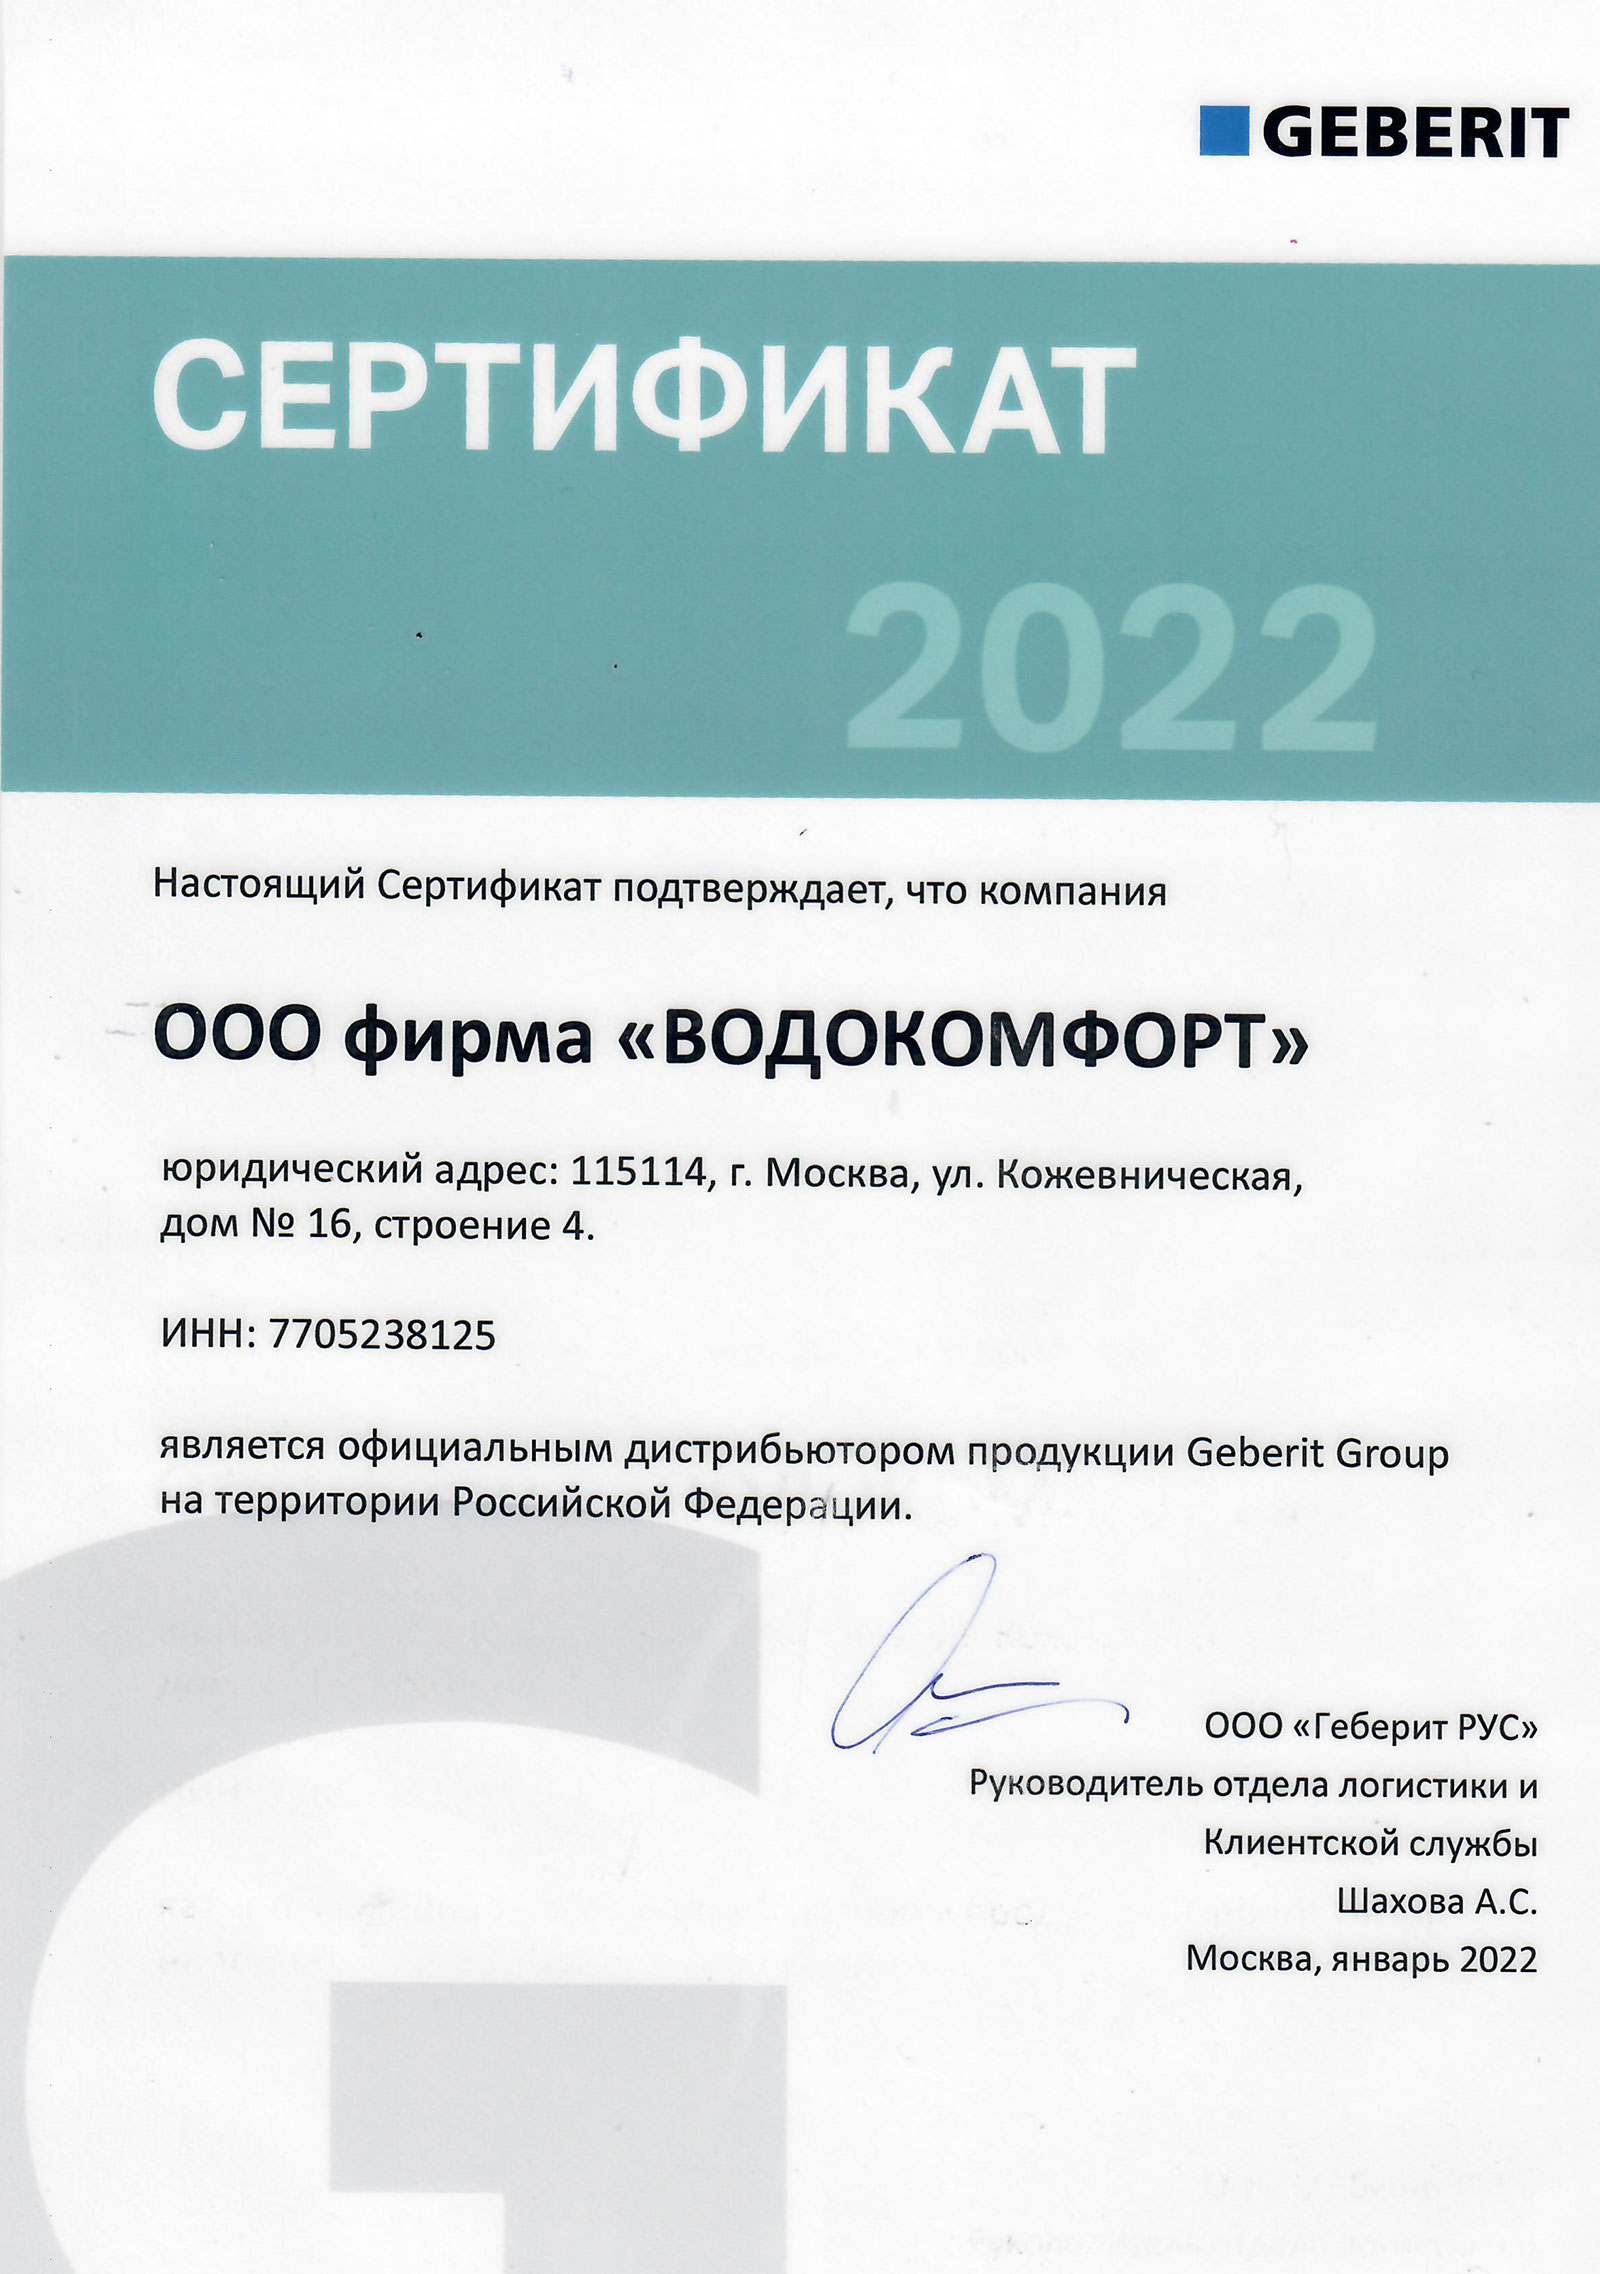 Сертификат Geberit